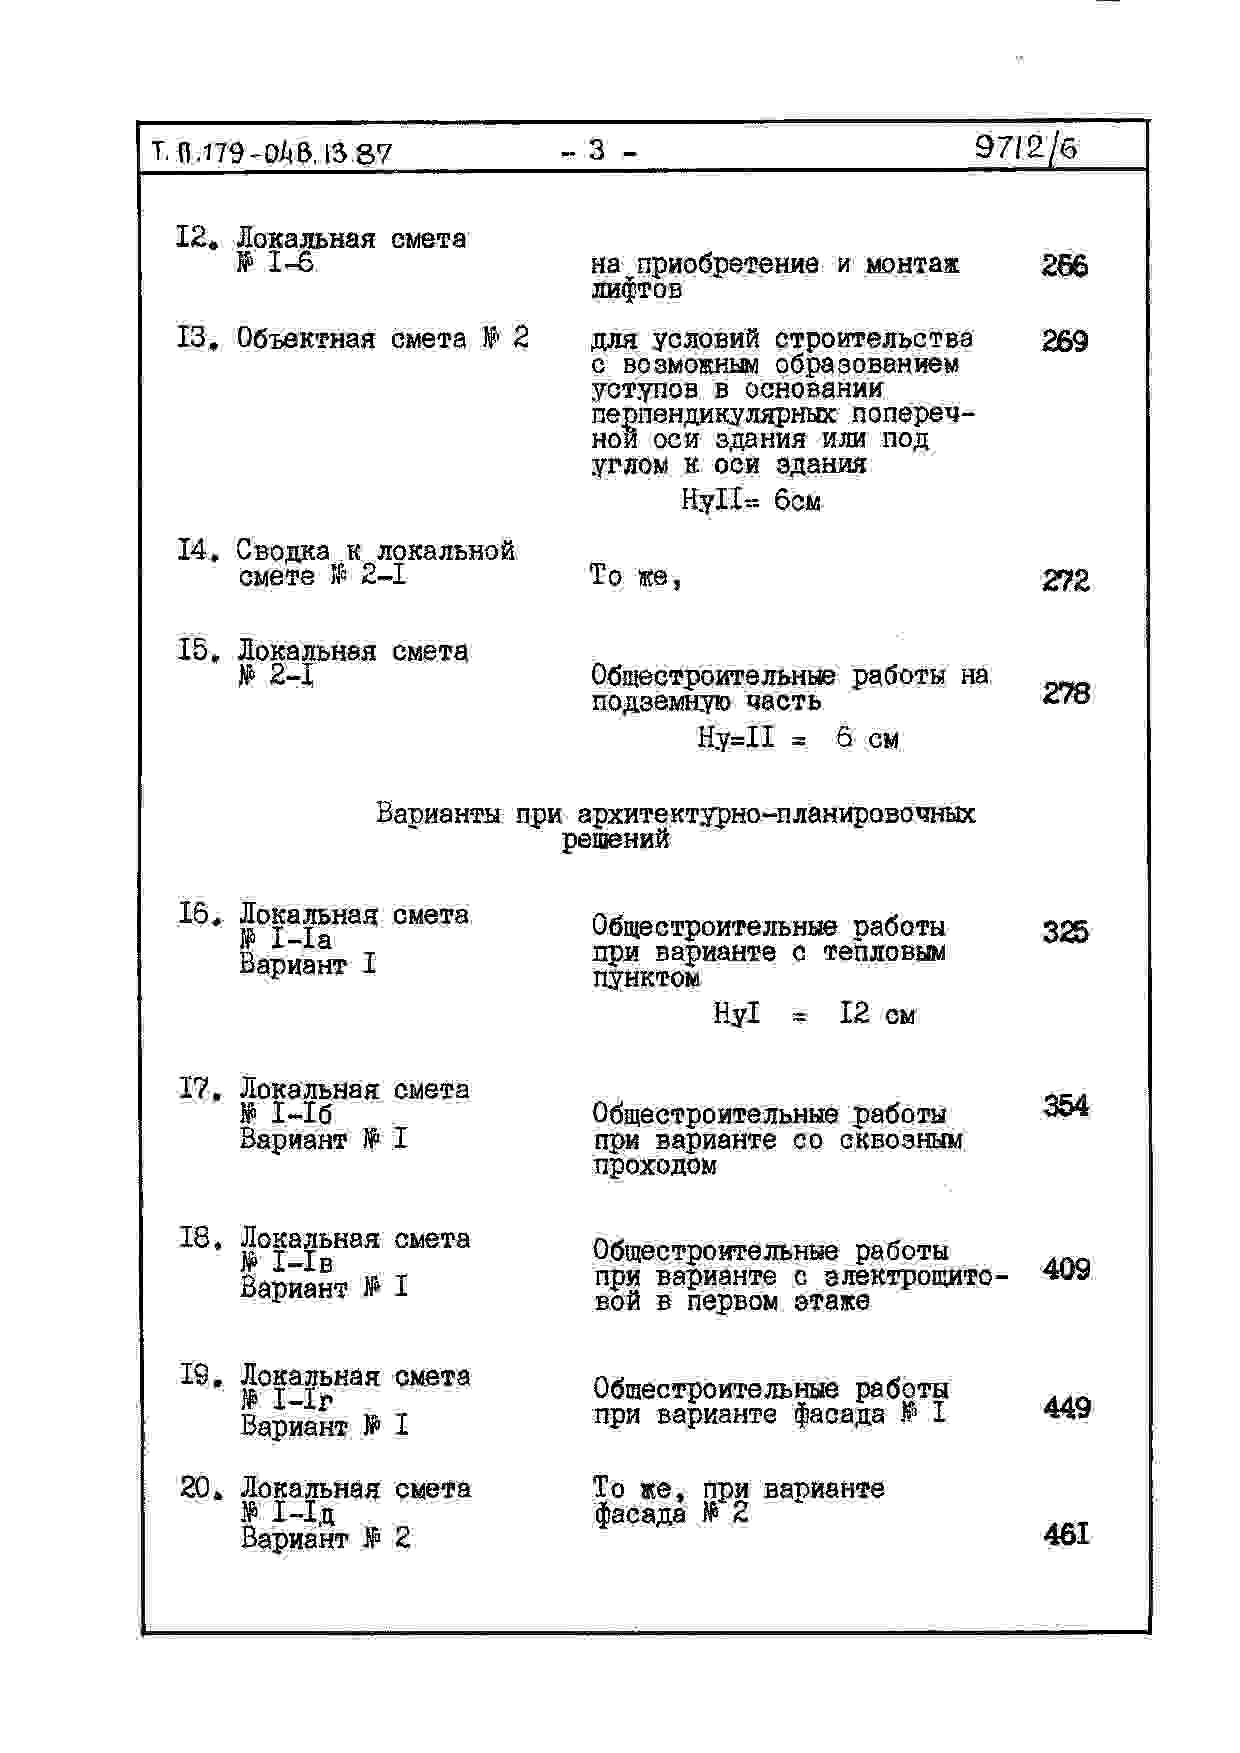 Состав альбома Типовой проект 179-04в.13.87Альбом 6 СМ 1 Сметная документация (на блок-секцию). Книги 1,2,3,4